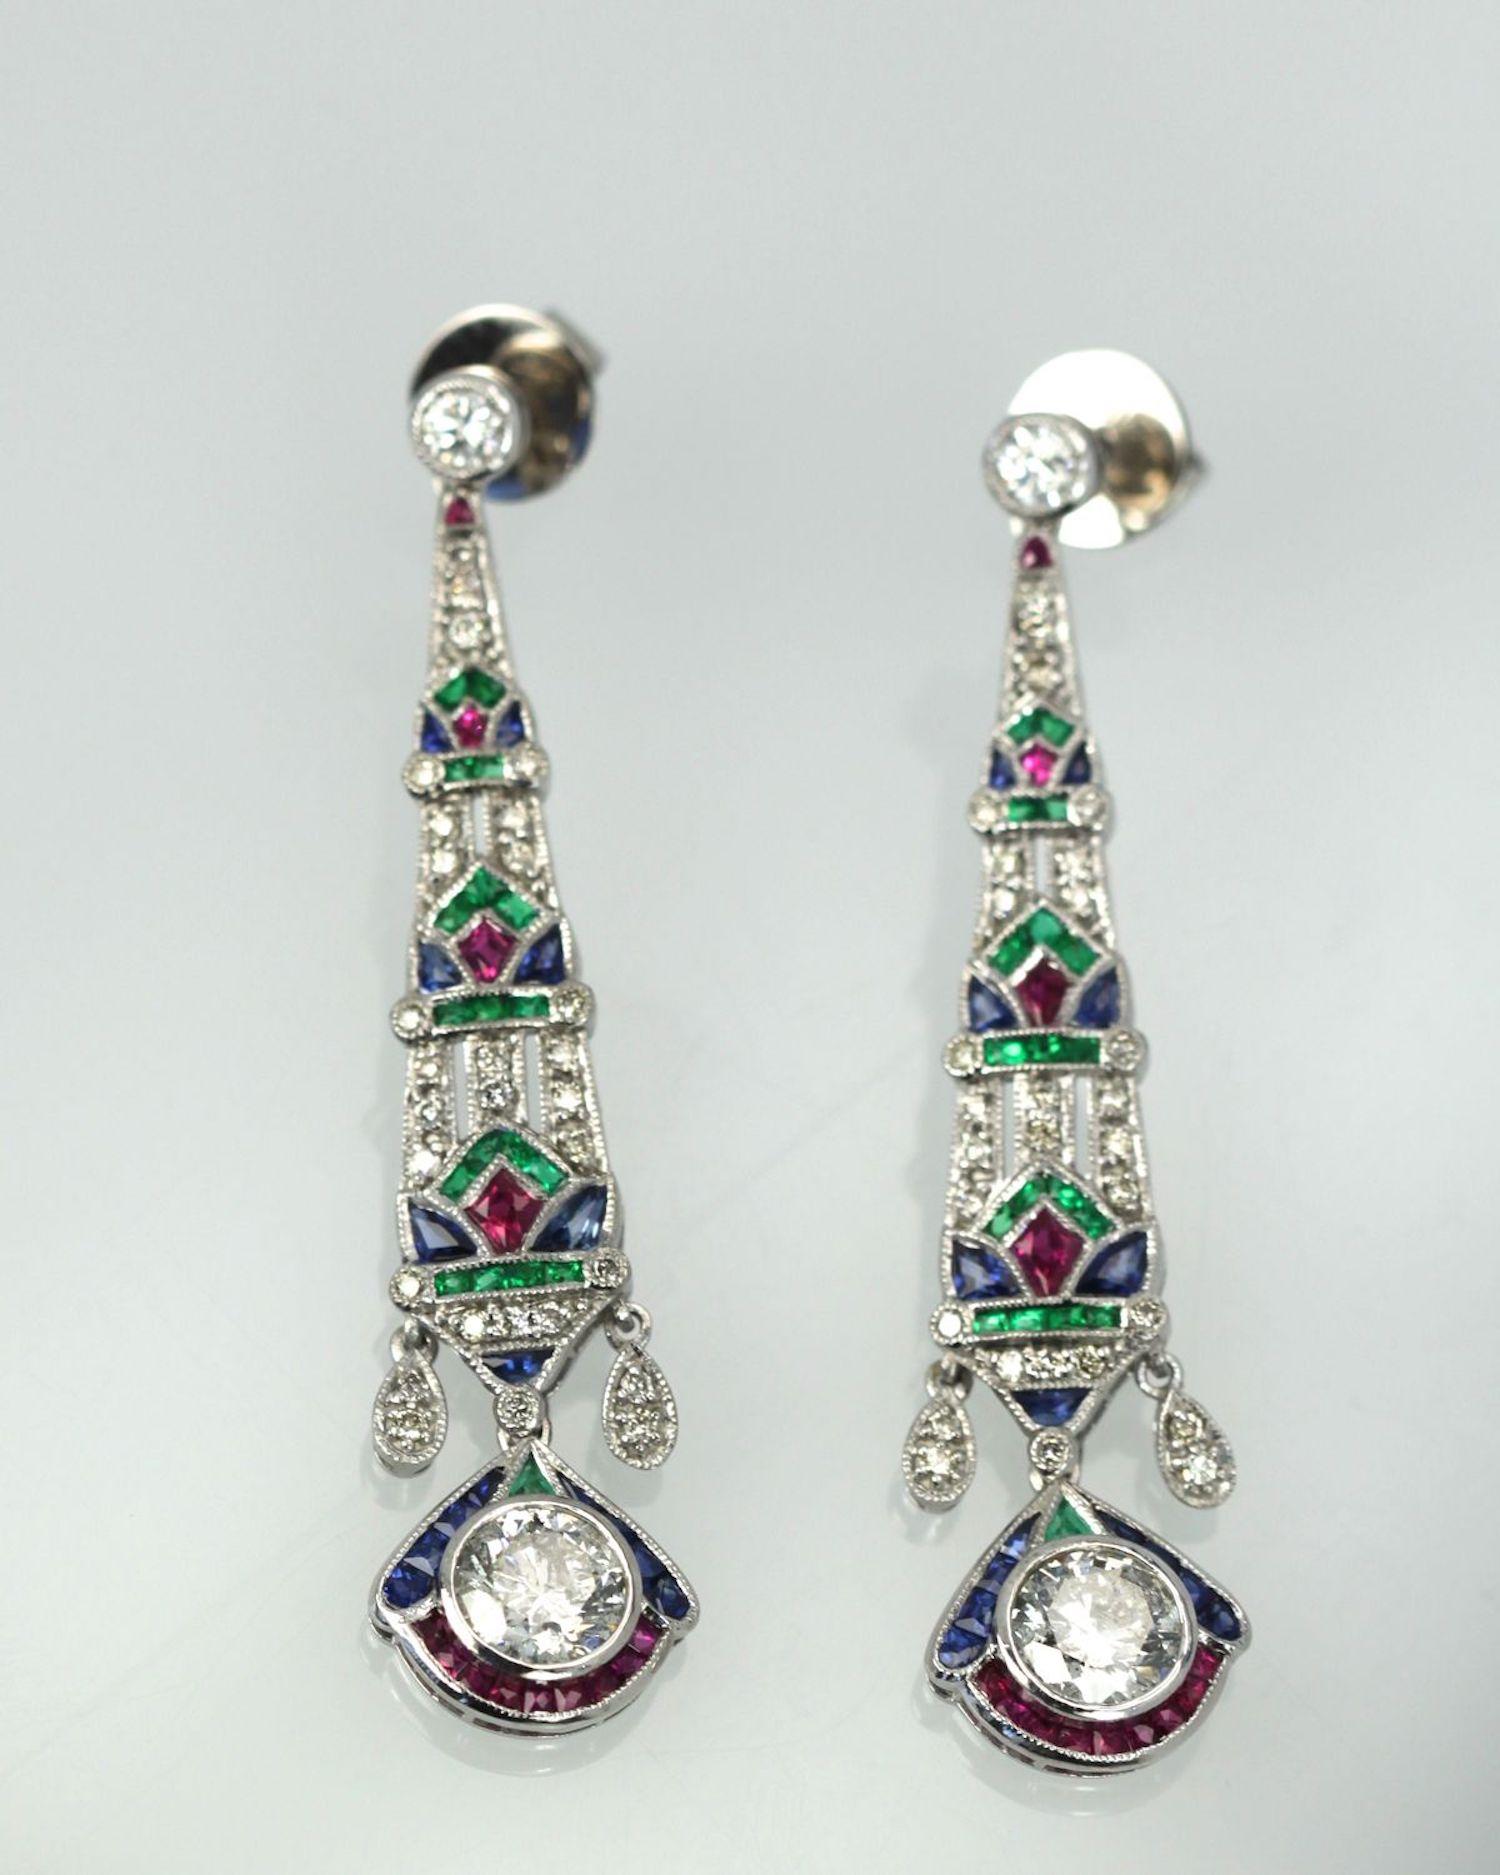 Diese Ohrringe sind aus Platin gefertigt und mit Smaragden, Rubinen, Saphiren und Diamanten besetzt.  Sie sind 2 1/4